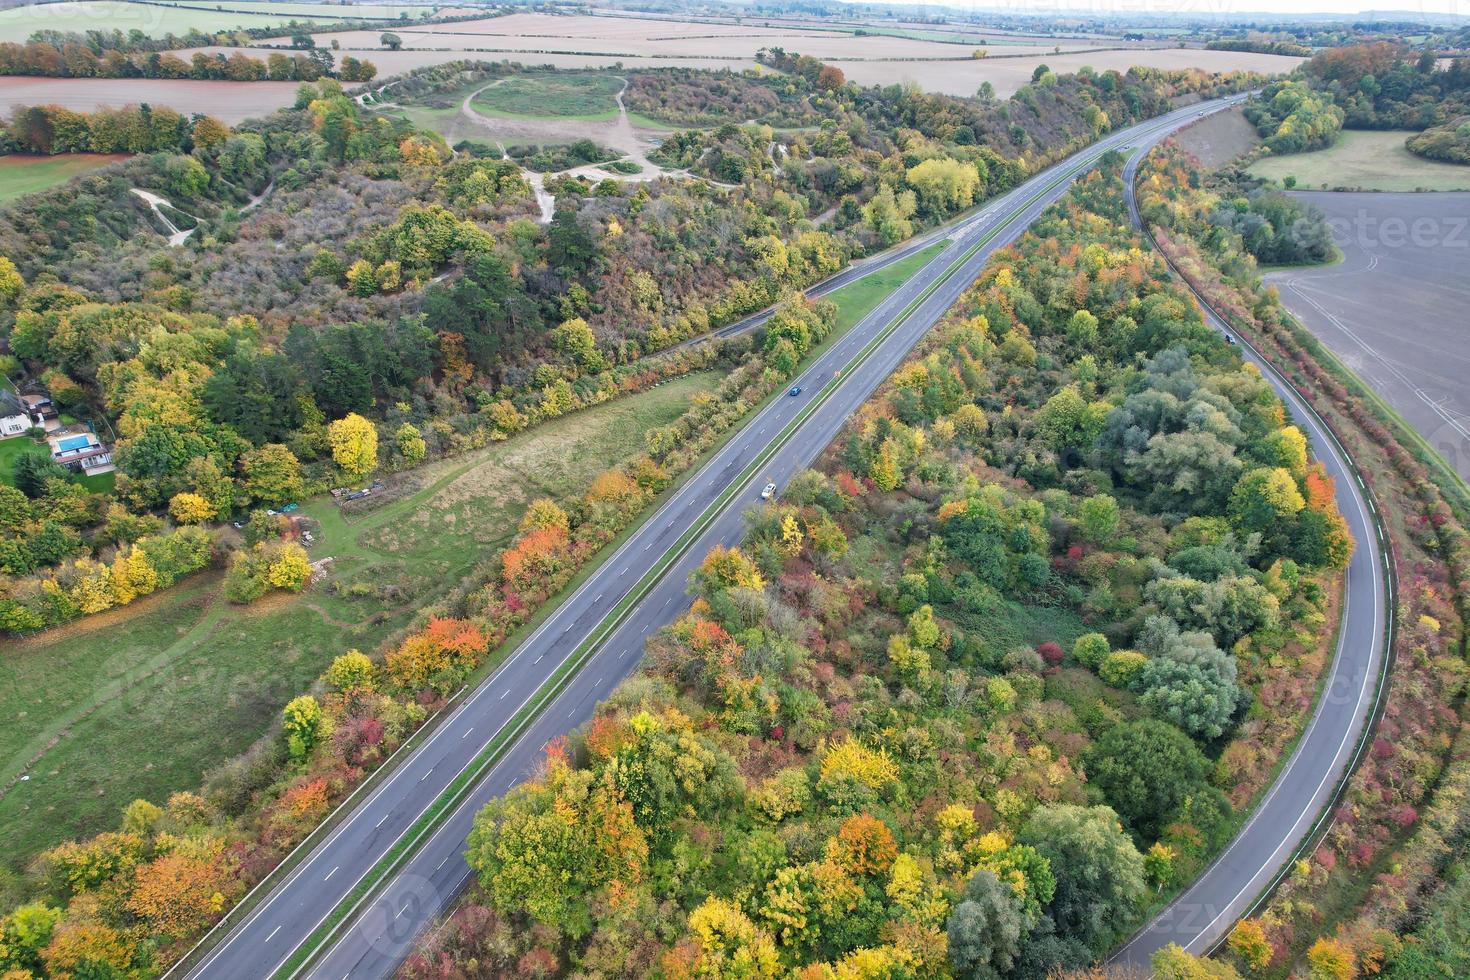 autoroutes britanniques, routes et autoroutes traversant la campagne anglaise. vue aérienne avec la caméra du drone photo